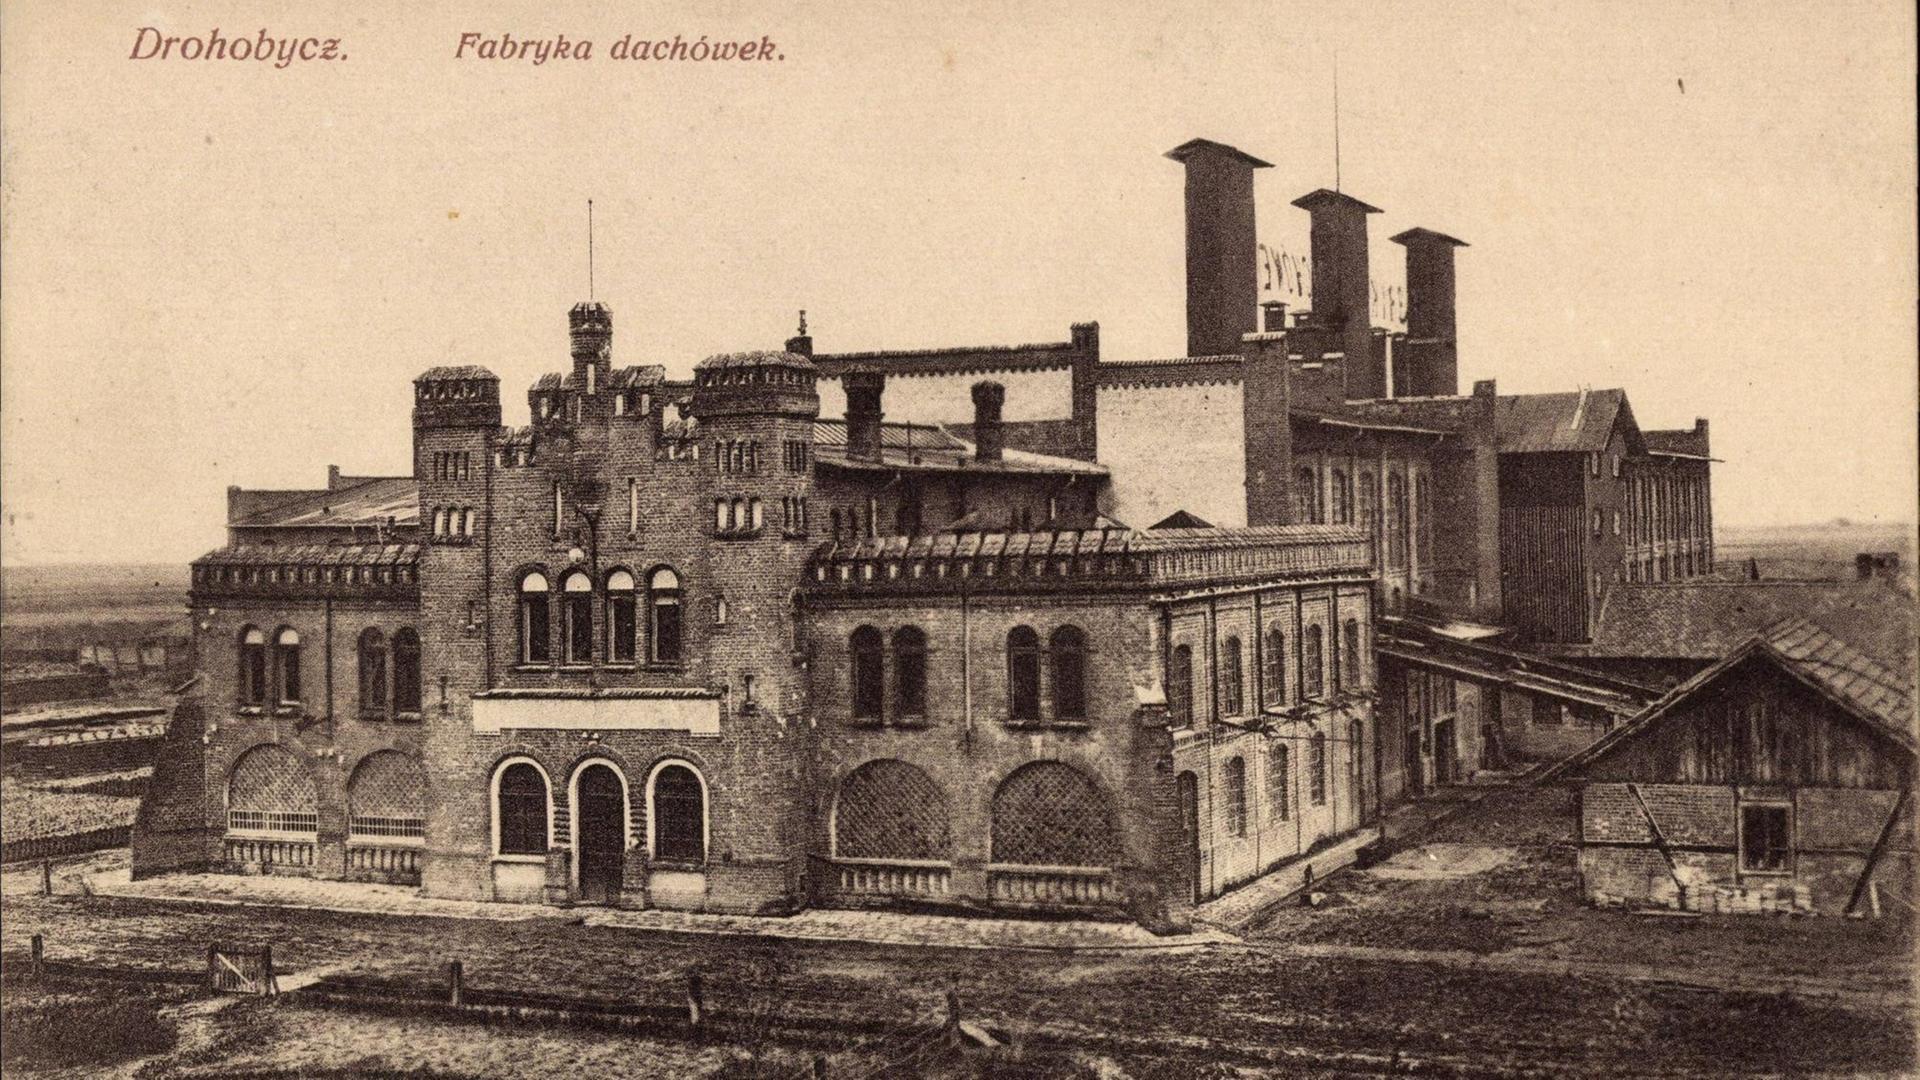 Fliesenfabrik in Drohobycz, Ukraine - historisches Archivbild.